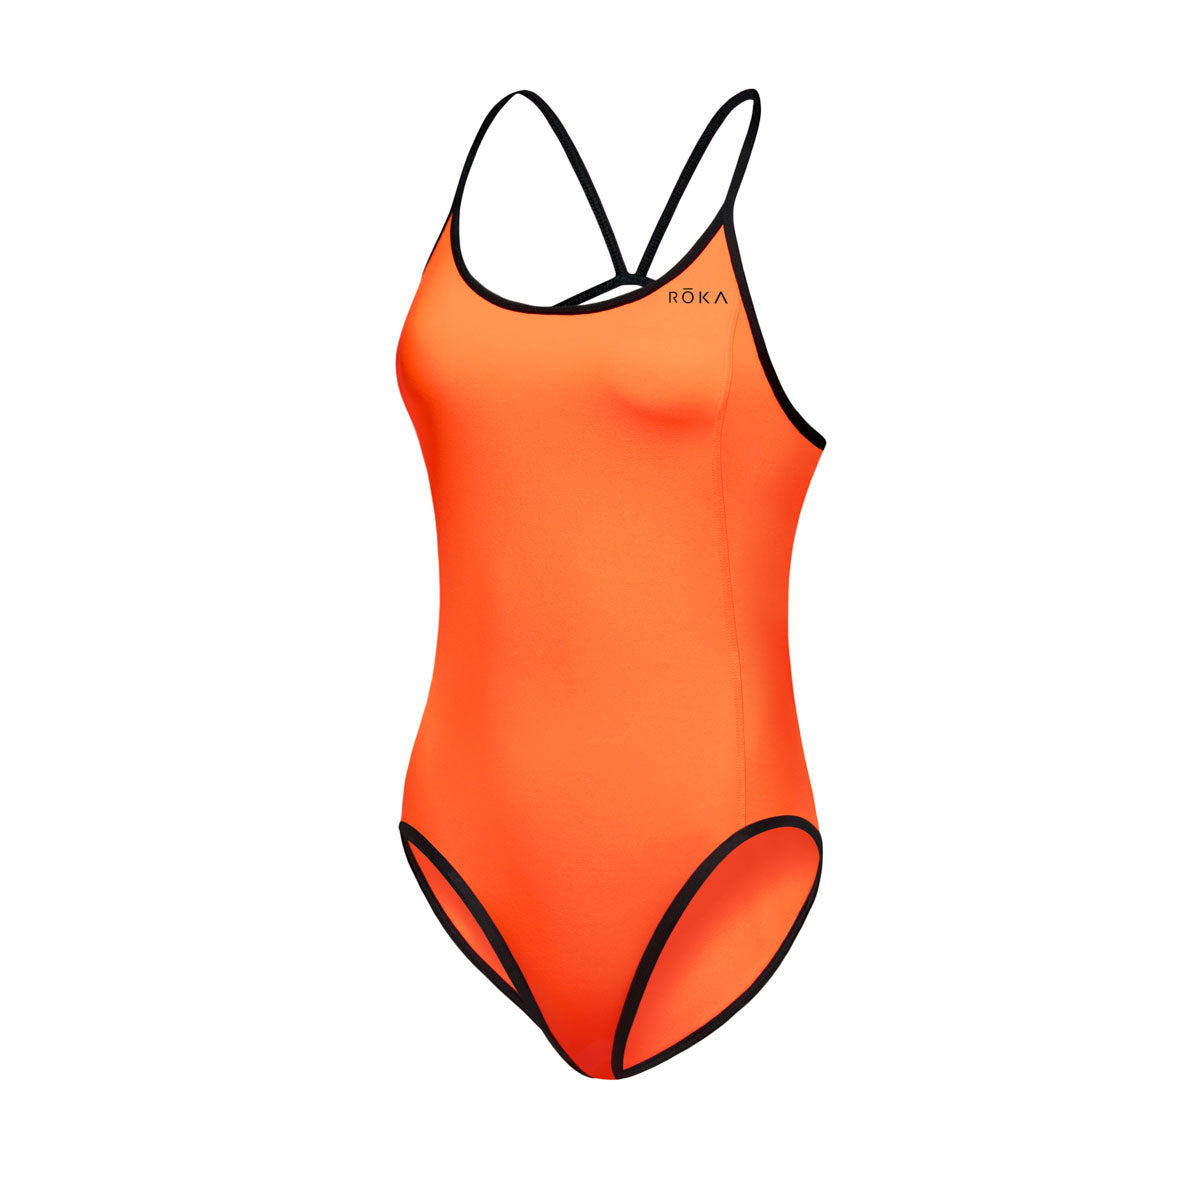 Swimming Suits. Women's Swimwear